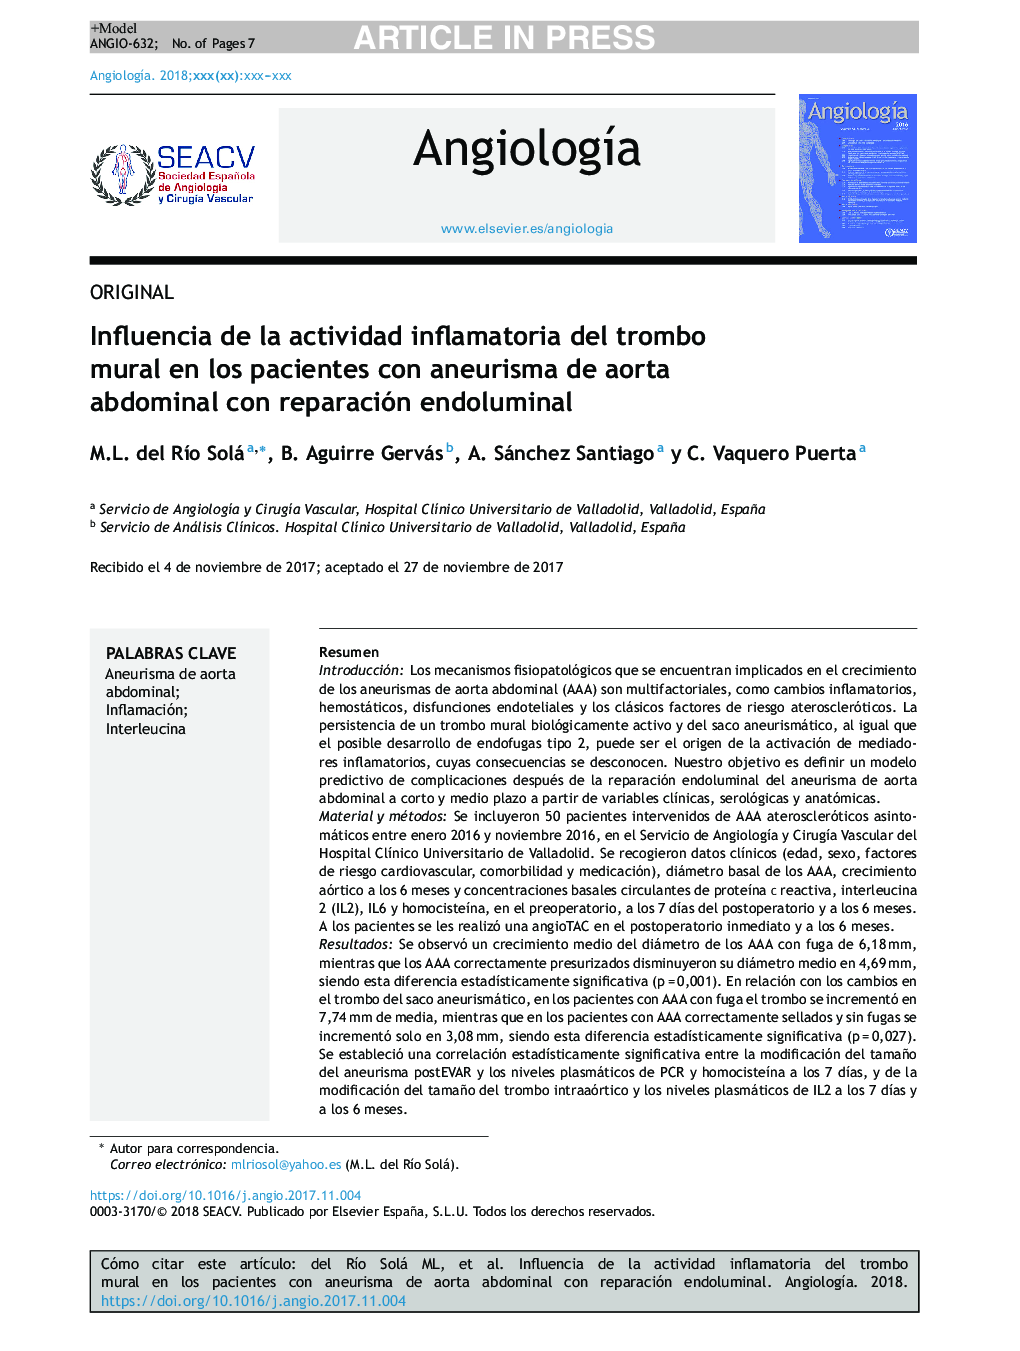 Influencia de la actividad inflamatoria del trombo mural en los pacientes con aneurisma de aorta abdominal con reparación endoluminal